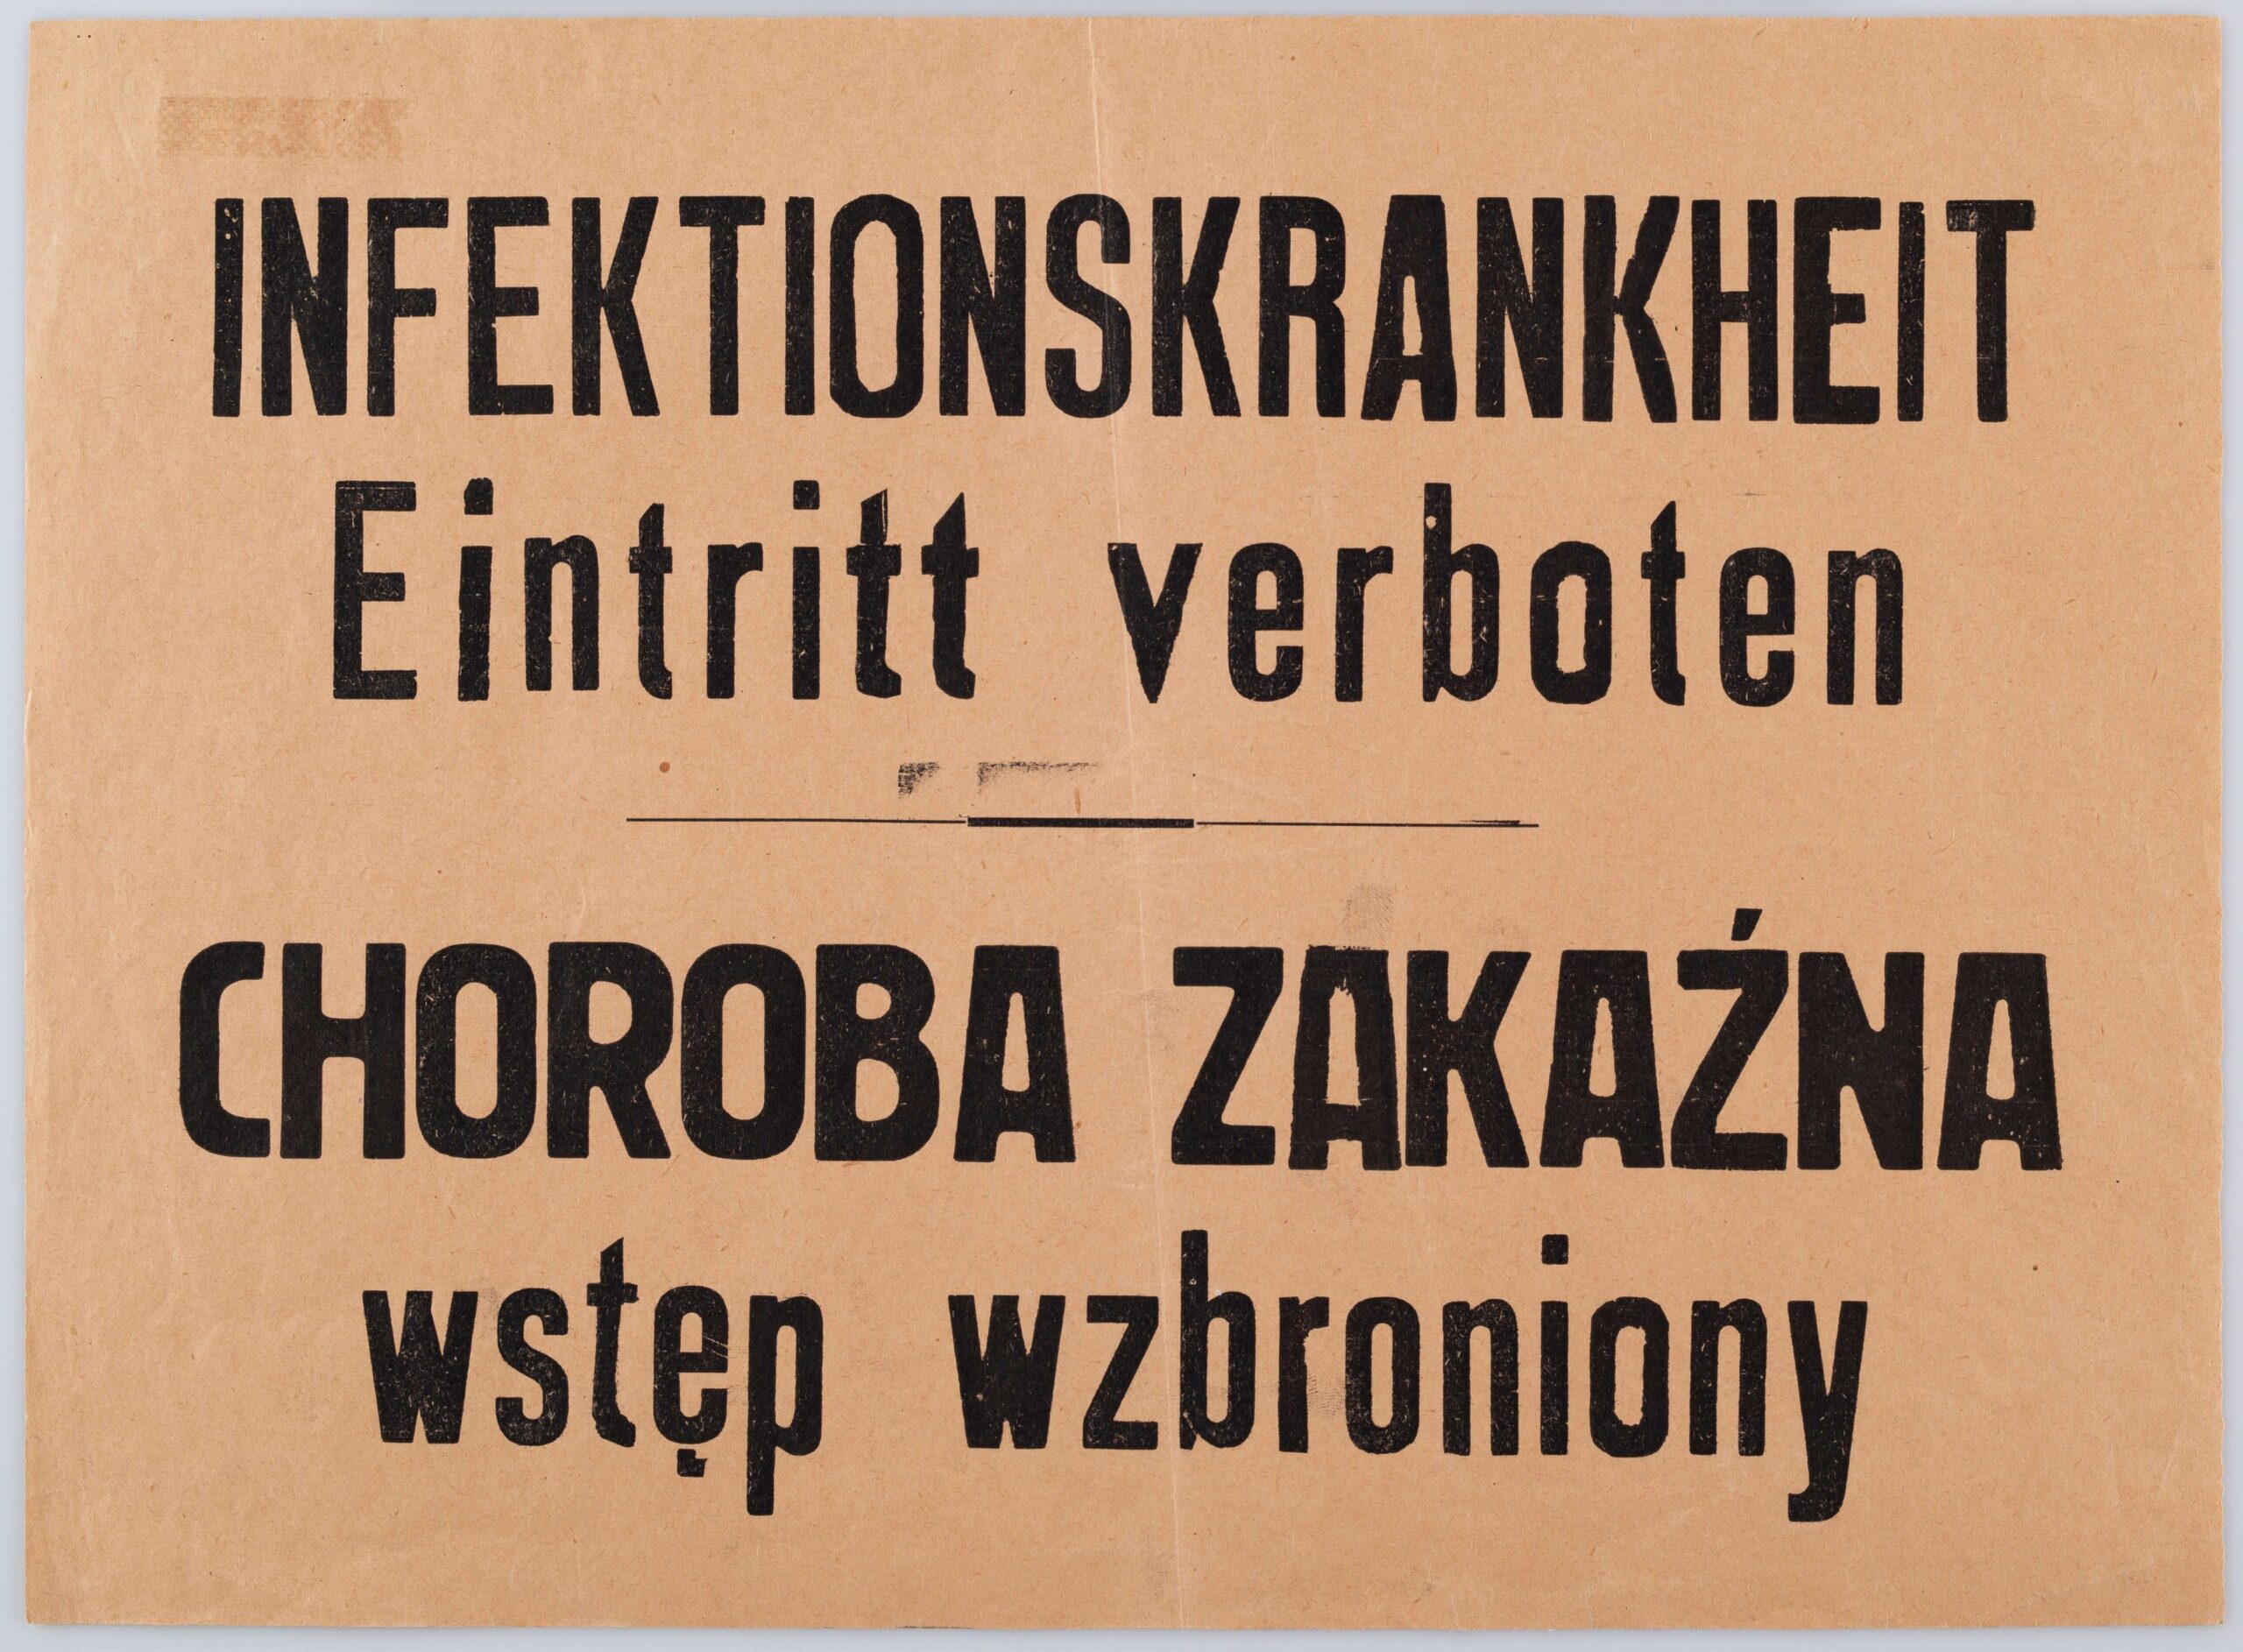 Kartka z zakazem wstępu ze względu na chorobę zakaźną. Ogłoszenie drukowane na pomarańczowym papierze, dwujęzyczne (po niemiecku i po polsku) z napisem 